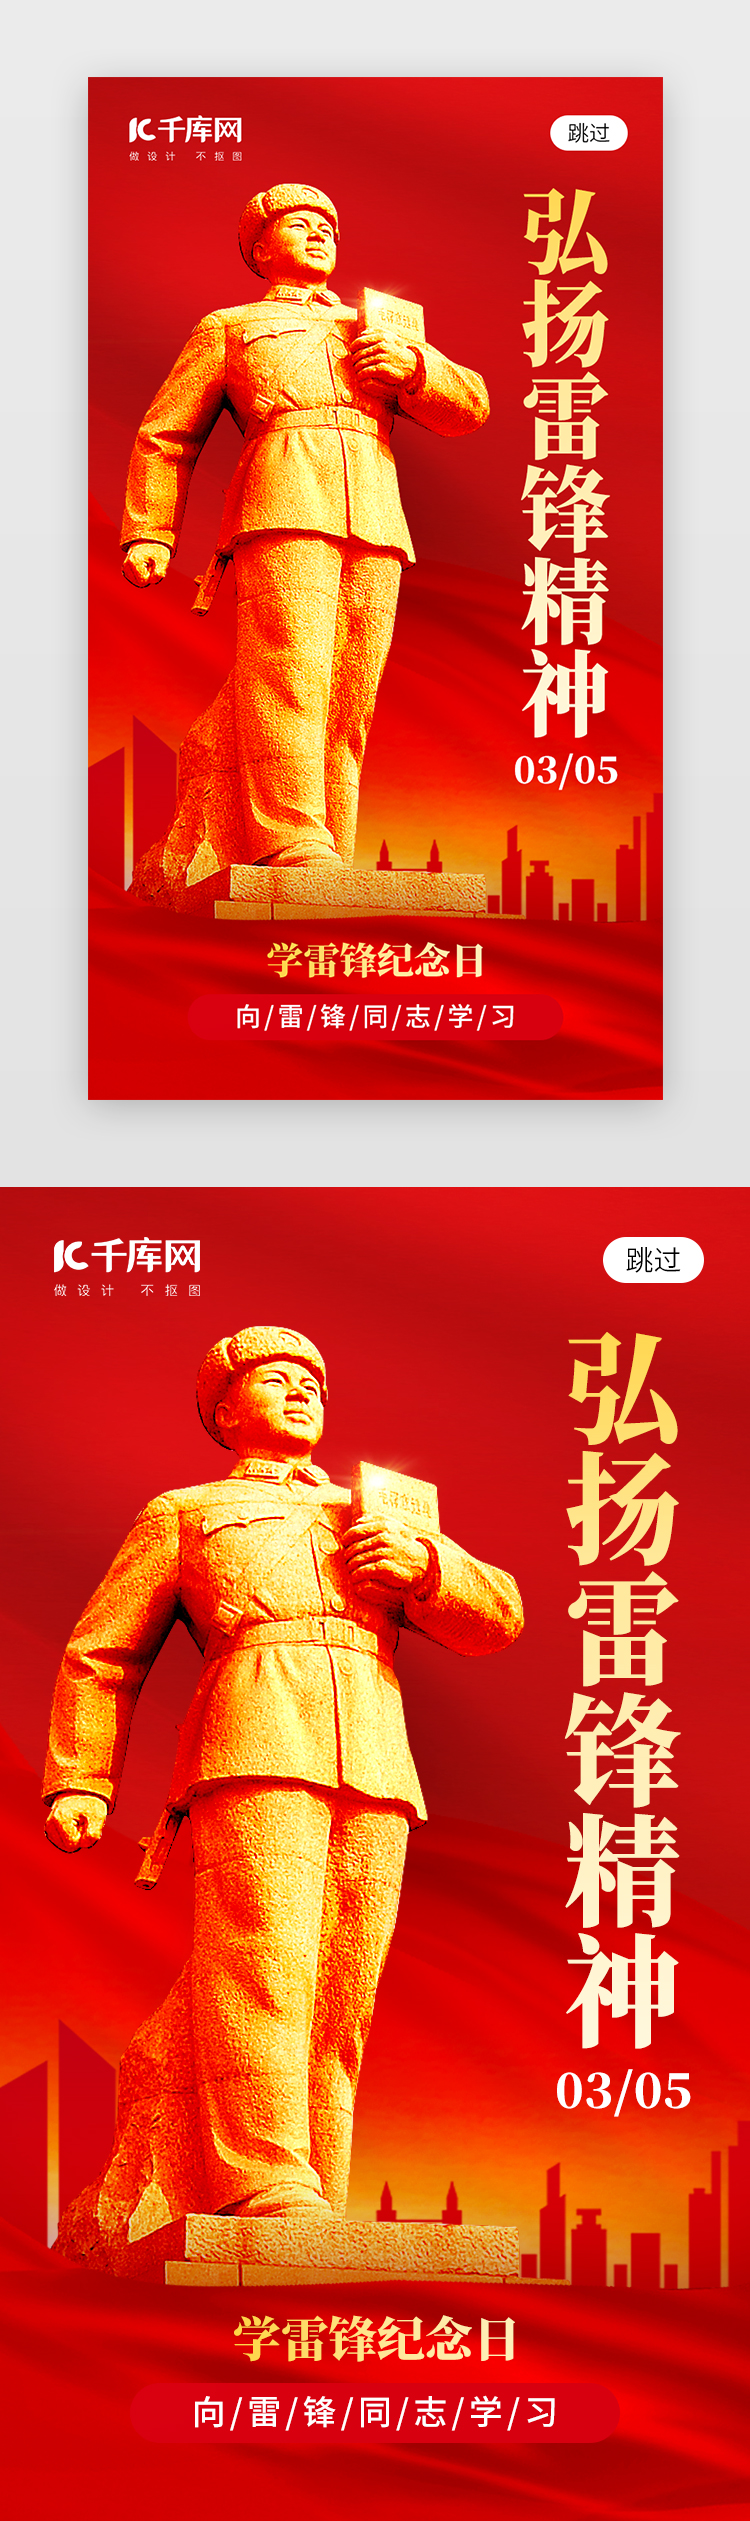 学雷锋纪念日app闪屏创意红色榜样图片